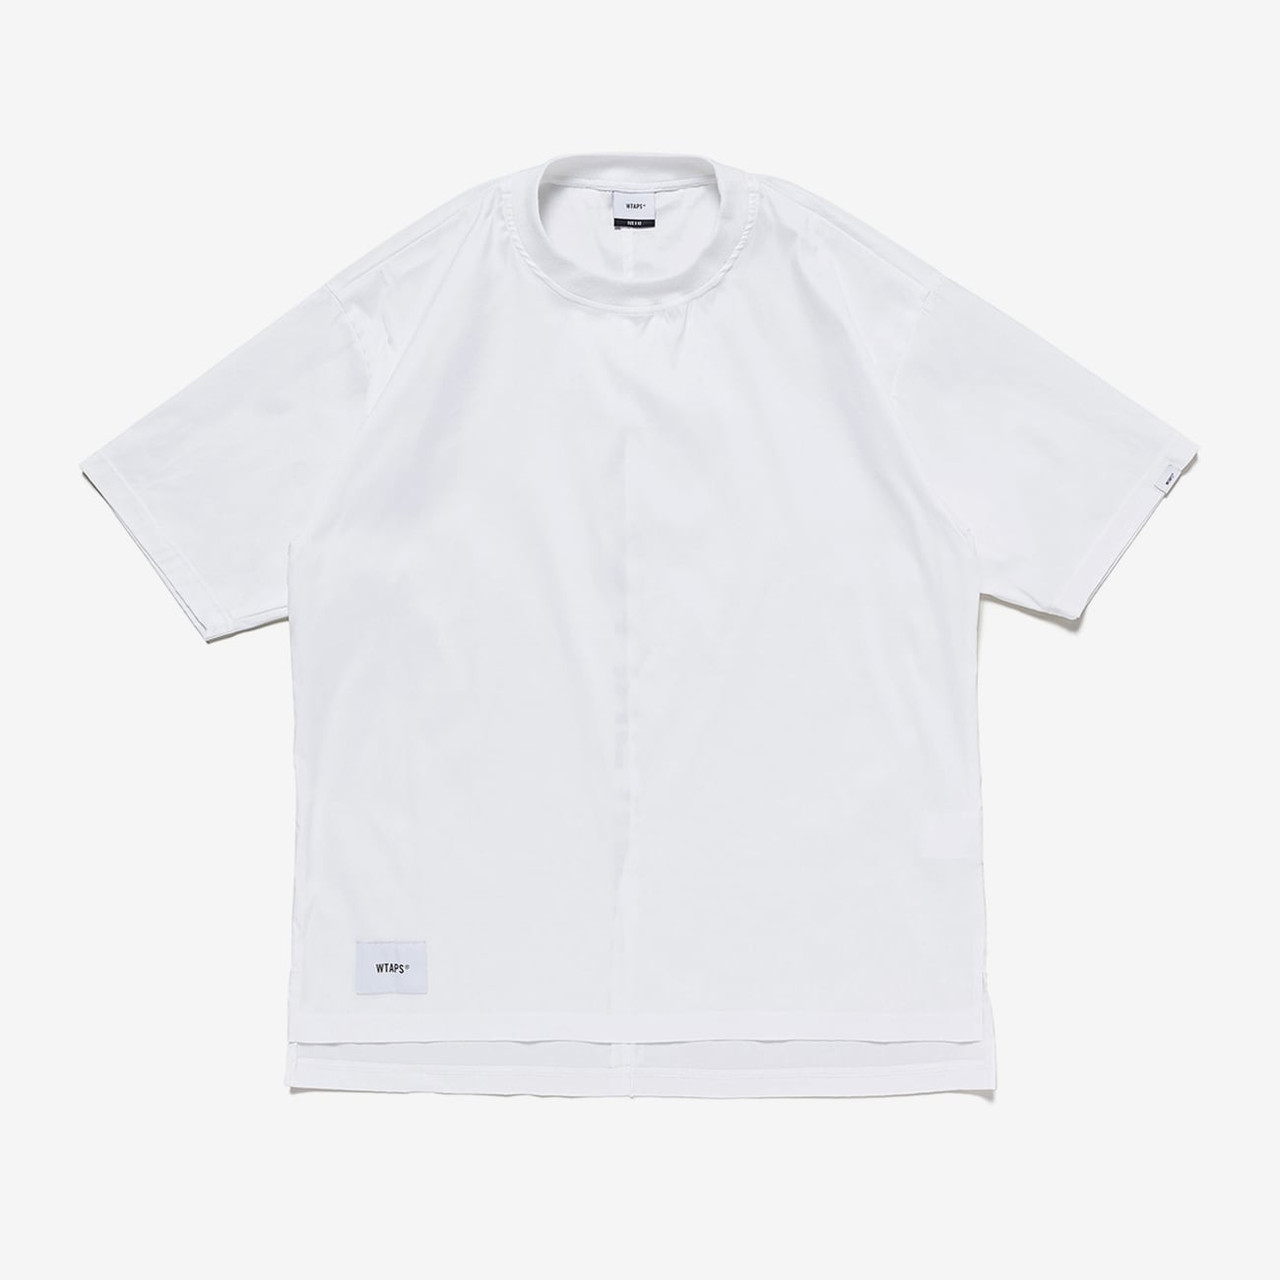 【人気特販】WTAPS LLW SS COPO COOLMAX Tシャツ/カットソー(半袖/袖なし)